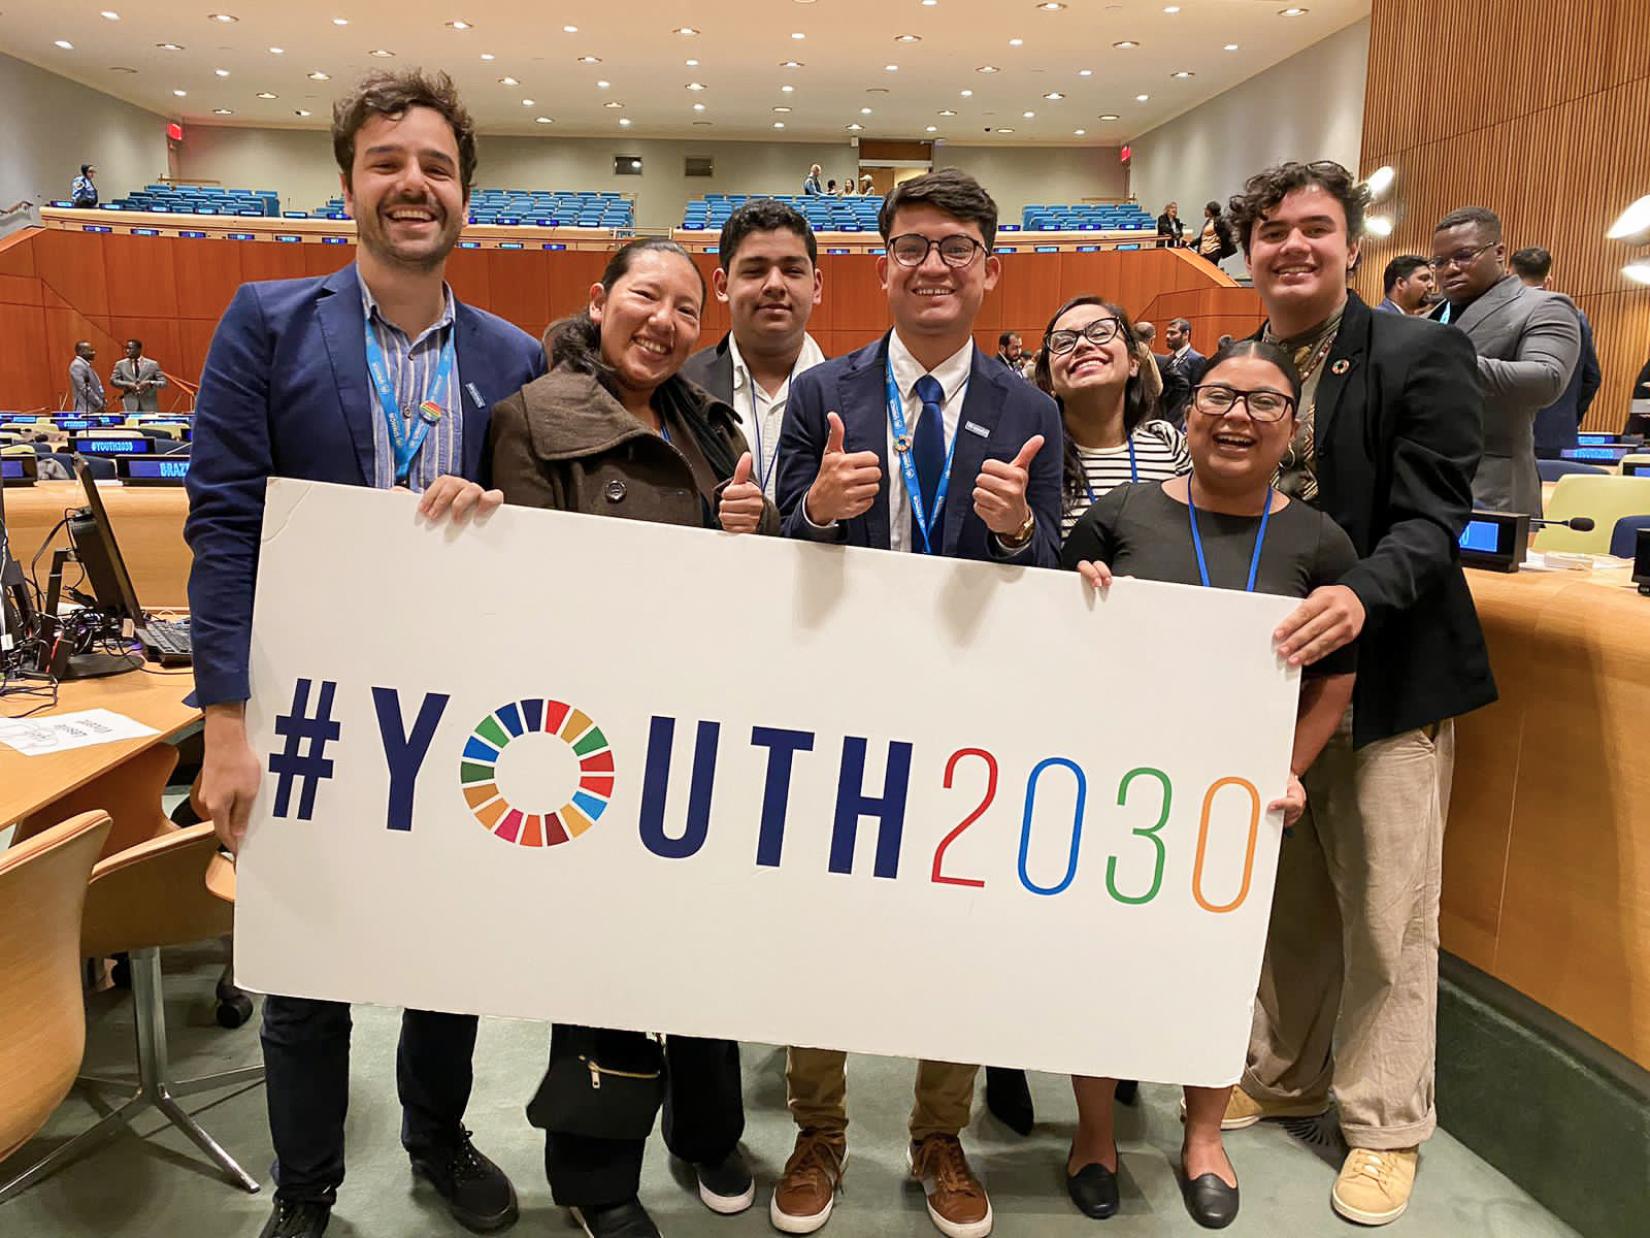 En primer plano, un grupo de jóvenes sostiene un cartel con la etiqueta #Youth2030 (#Juventud2030), al fondo el salón donde se desarrolló la Cumbre de la Juventud en la sede de las Naciones Unidas en Nueva York.